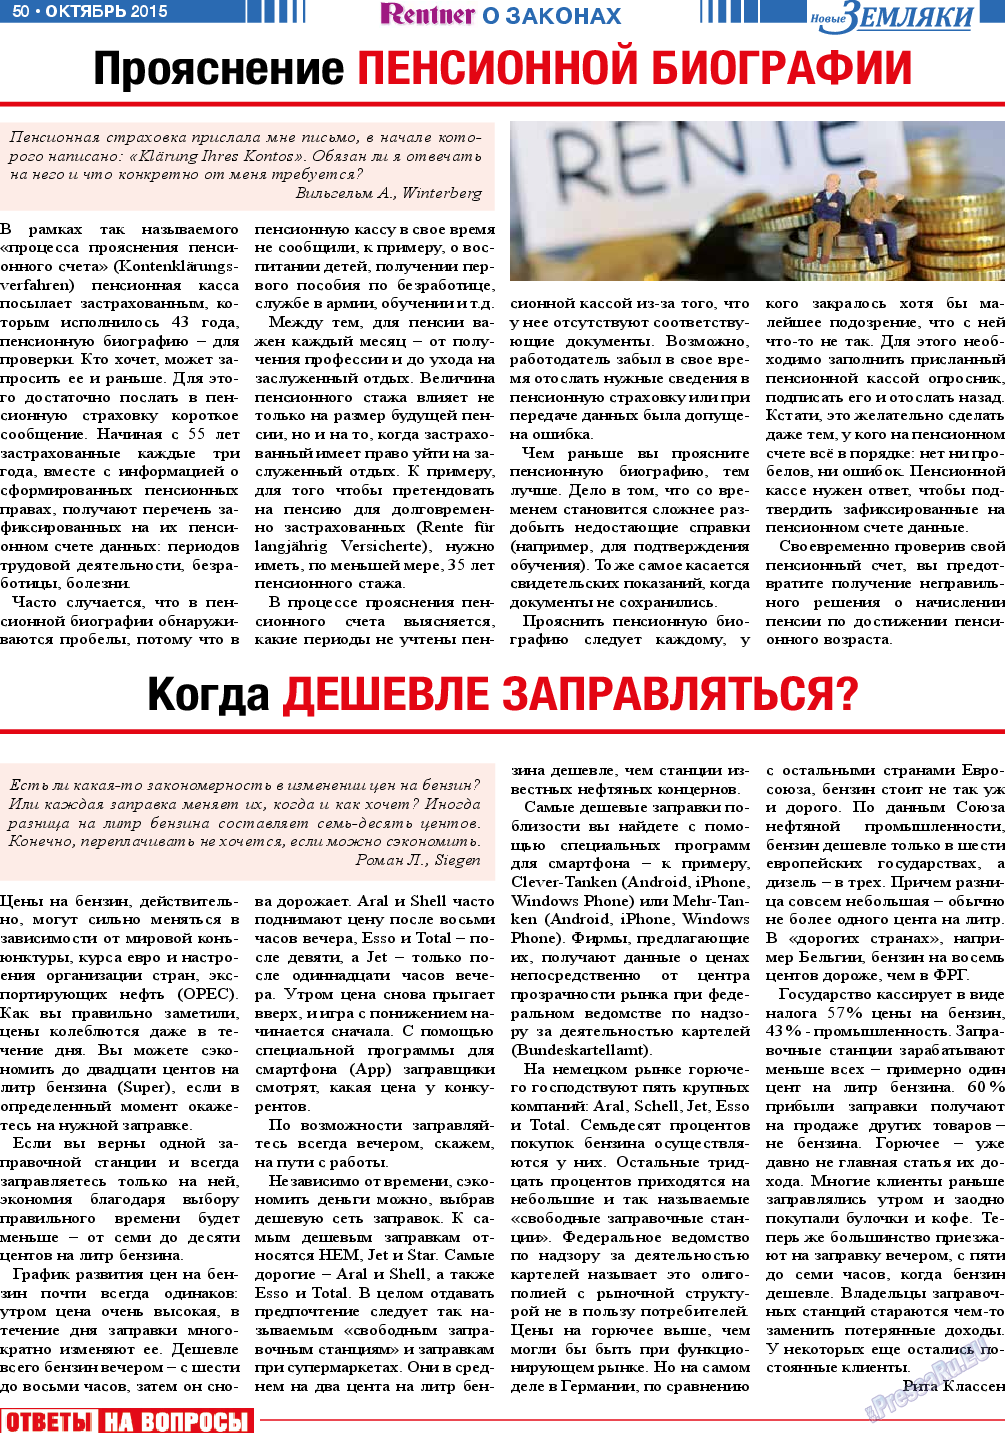 Новые Земляки, газета. 2015 №10 стр.50